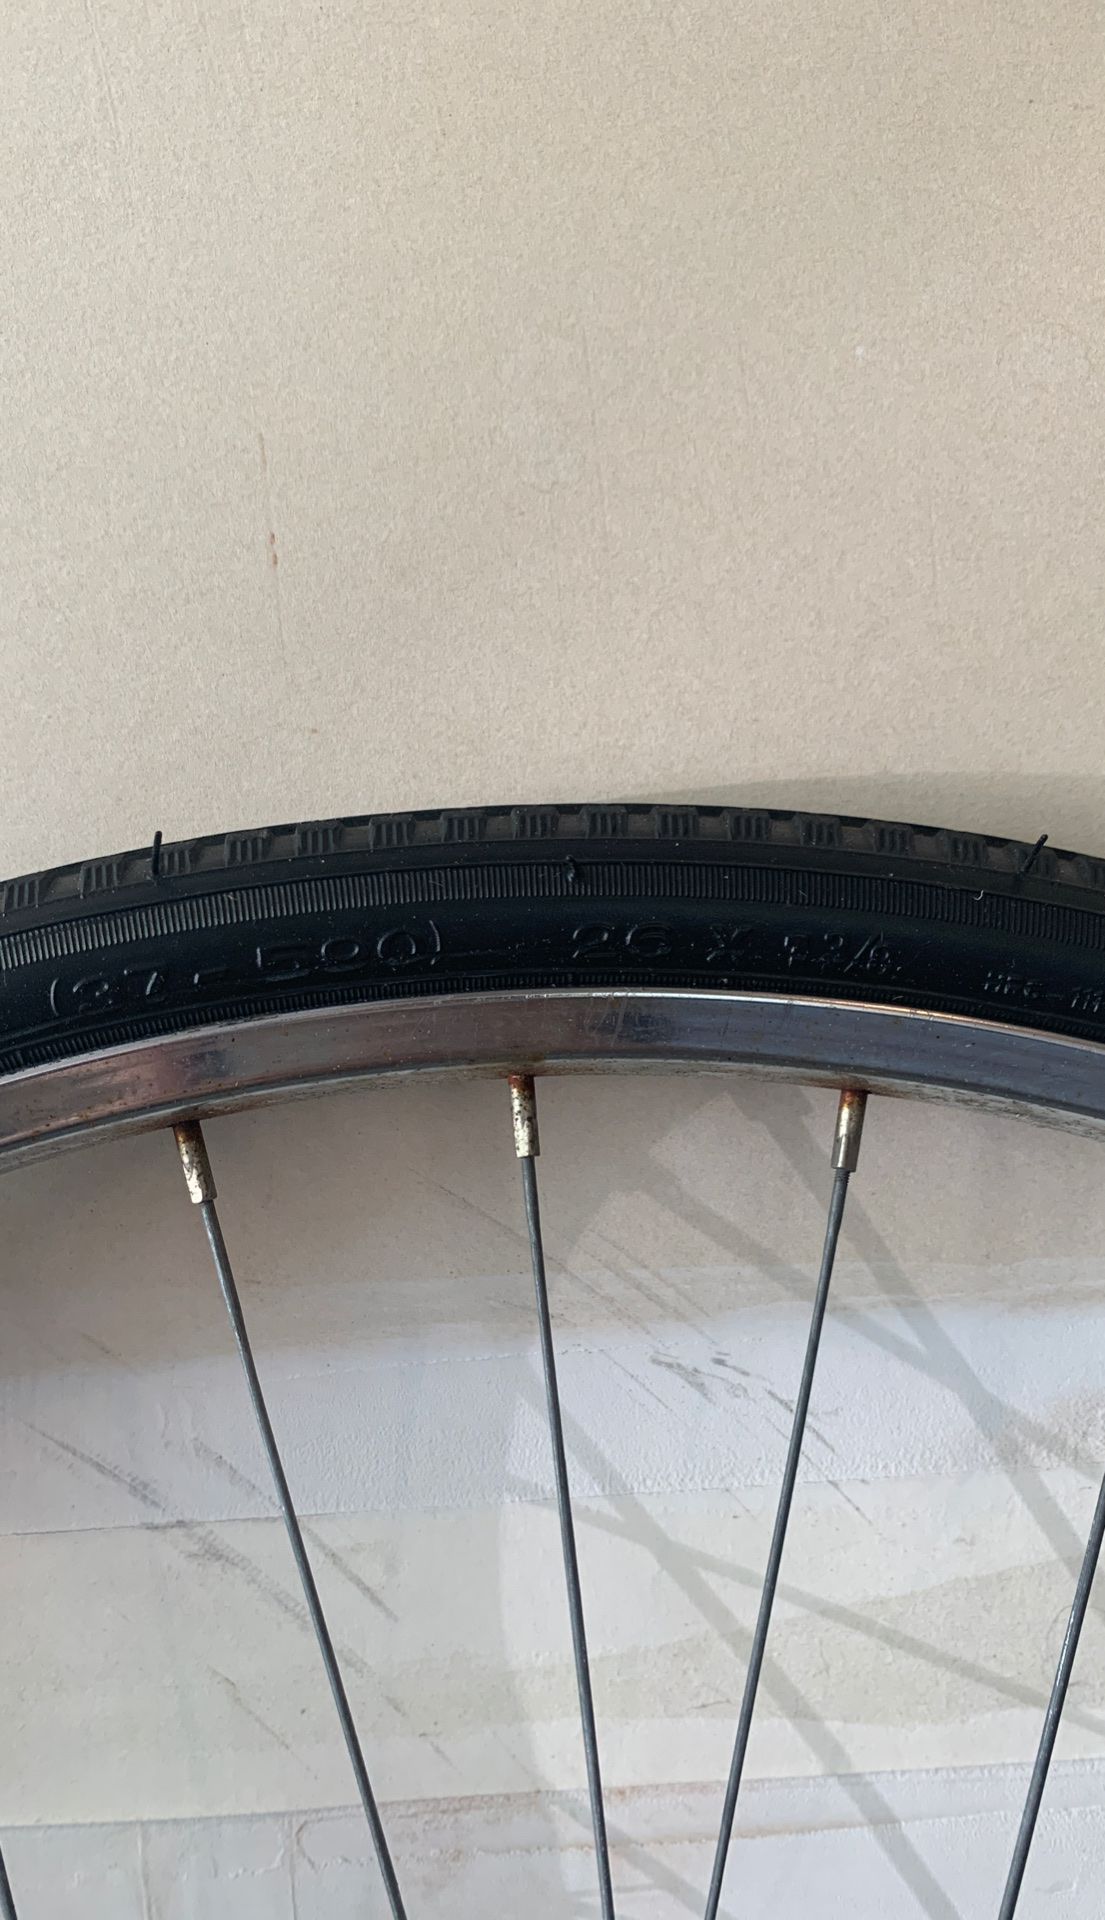 Bike tire and wheel